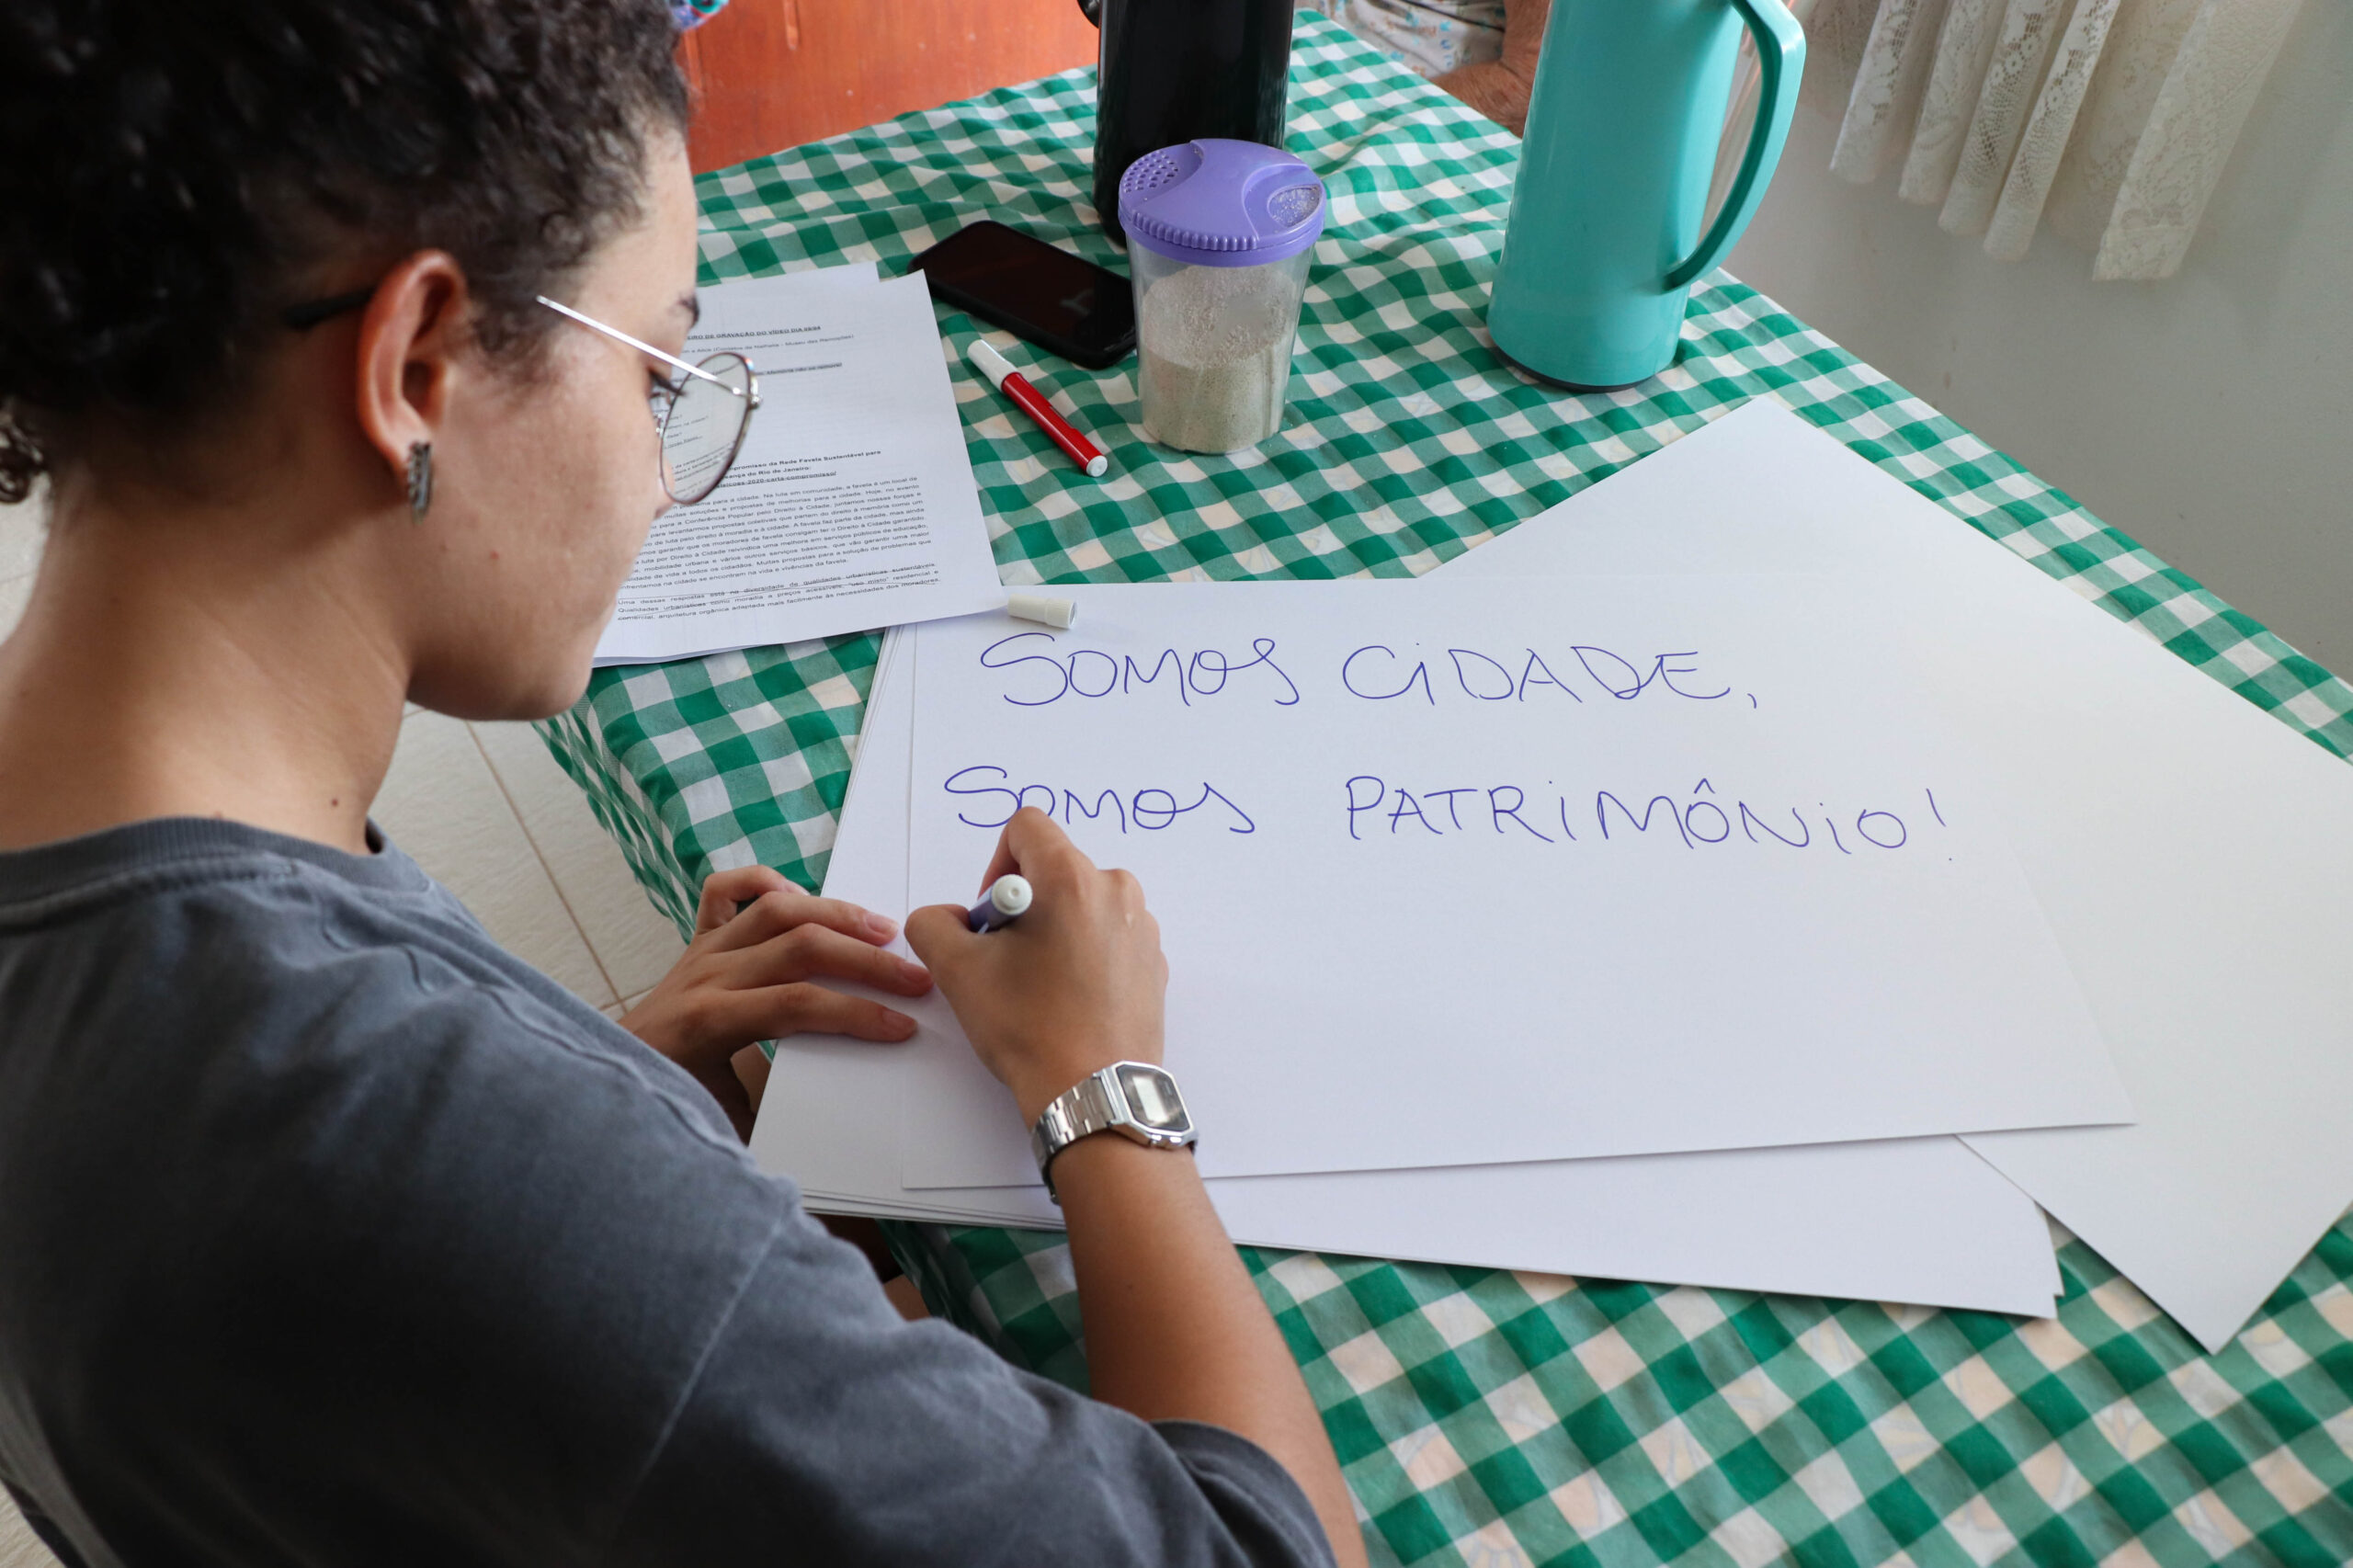 Cartolina usada na dinâmica de grupos sobre a mesa, onde se lê 'Somos Cidade, Somos Patrimônio'. Foto: Alexandre Cerqueira